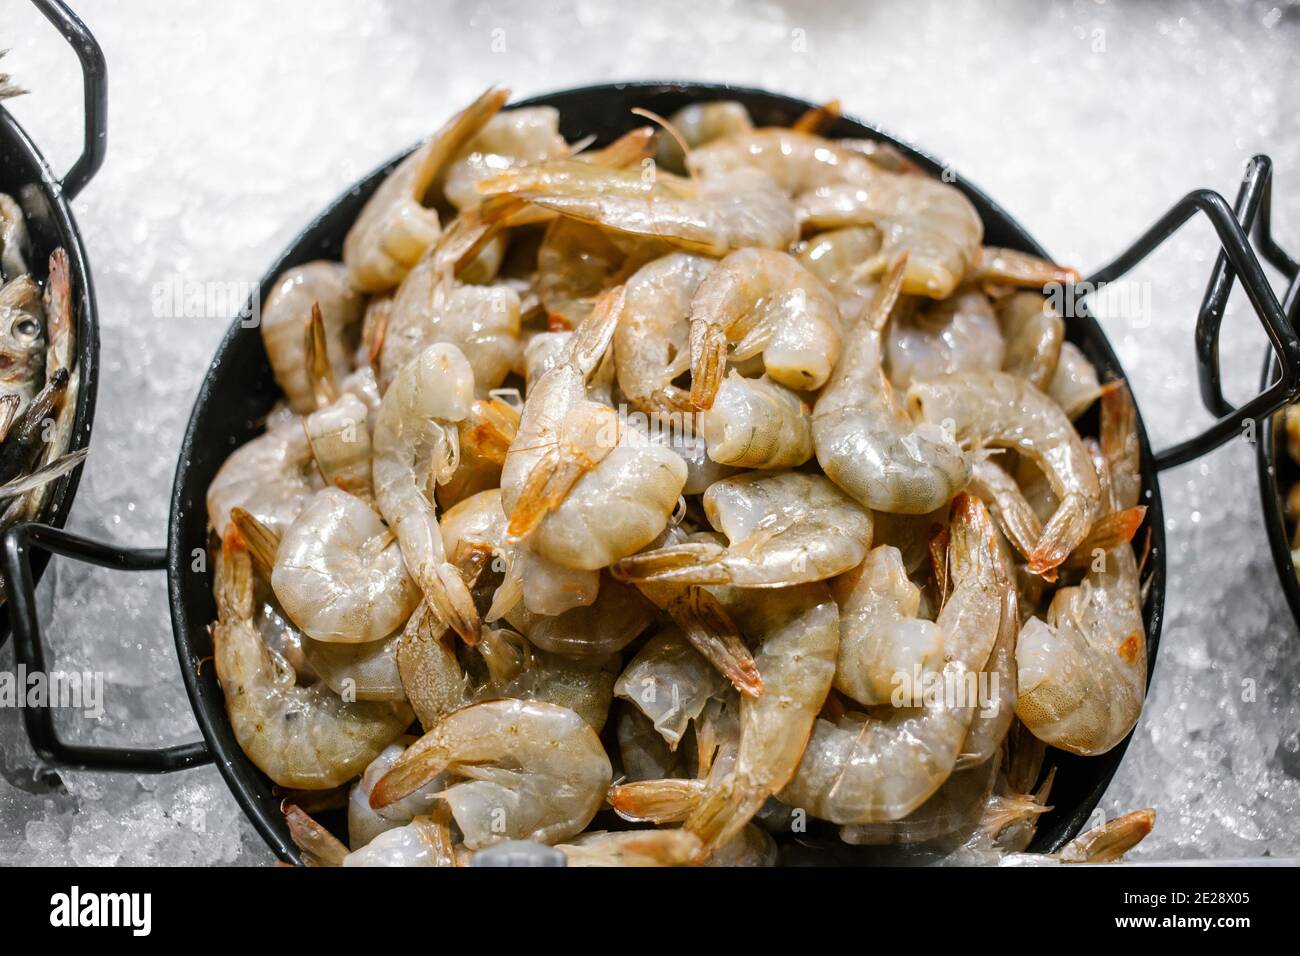 Gros plan de crevettes fraîches traitées dans une assiette. Crevettes fraîches préparées Épluchez la coquille, préparez les matières premières prêtes à cuire. Banque D'Images